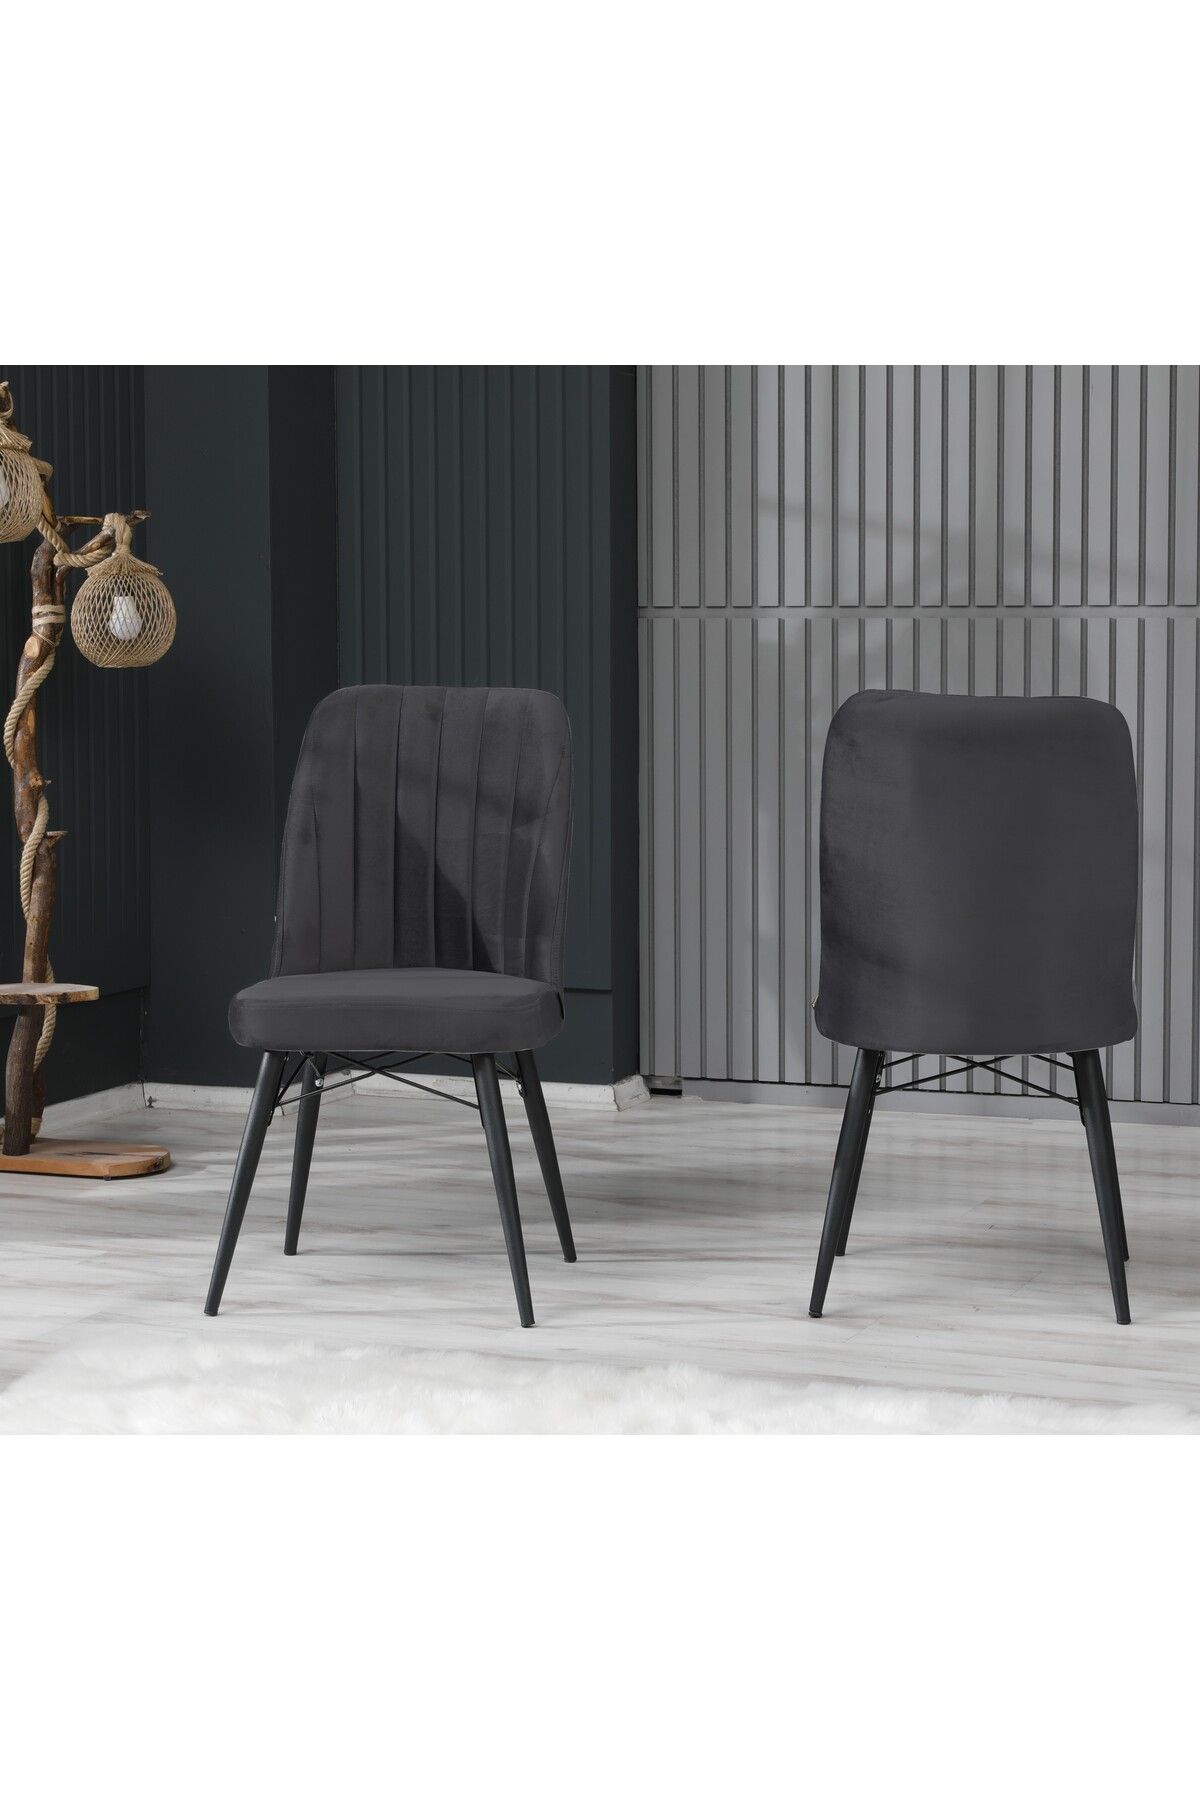 EZU Salon Mutfak Sandalyeleri Seher Antrasit Siyah Ayaklı Sandalye